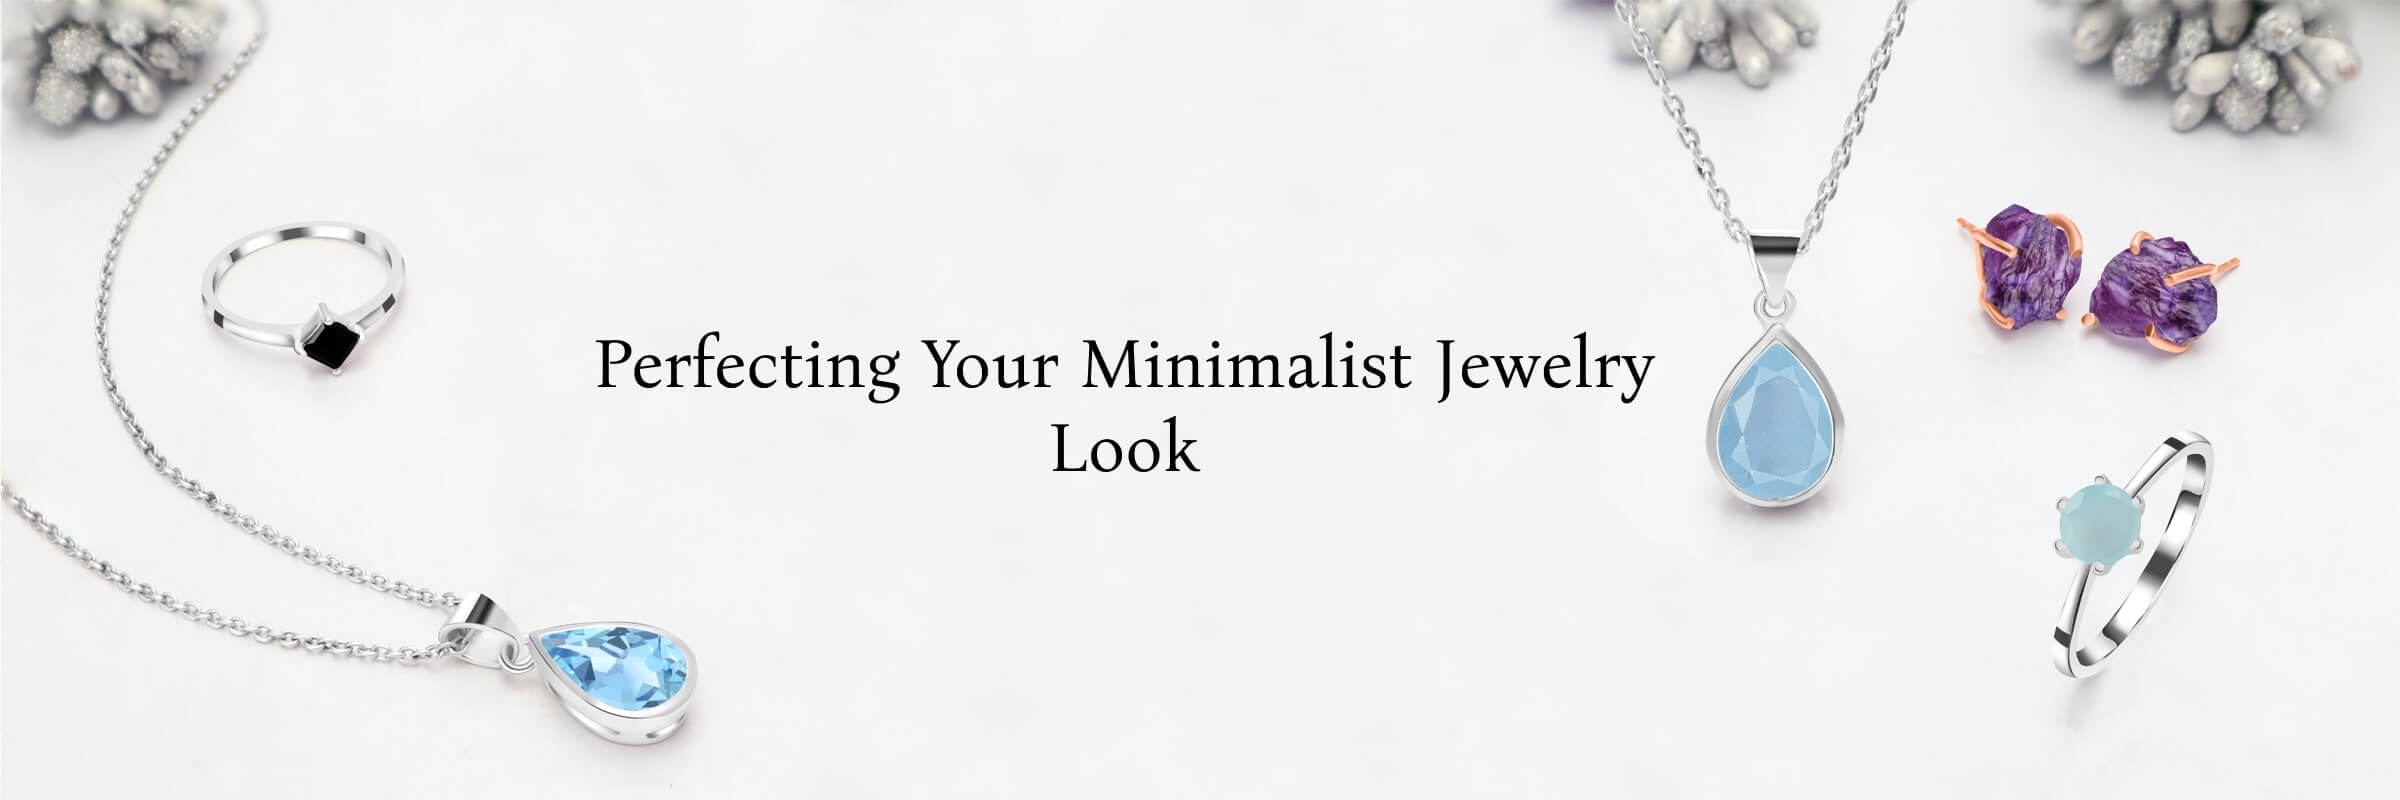 How to Wear Minimalist Jewelry?